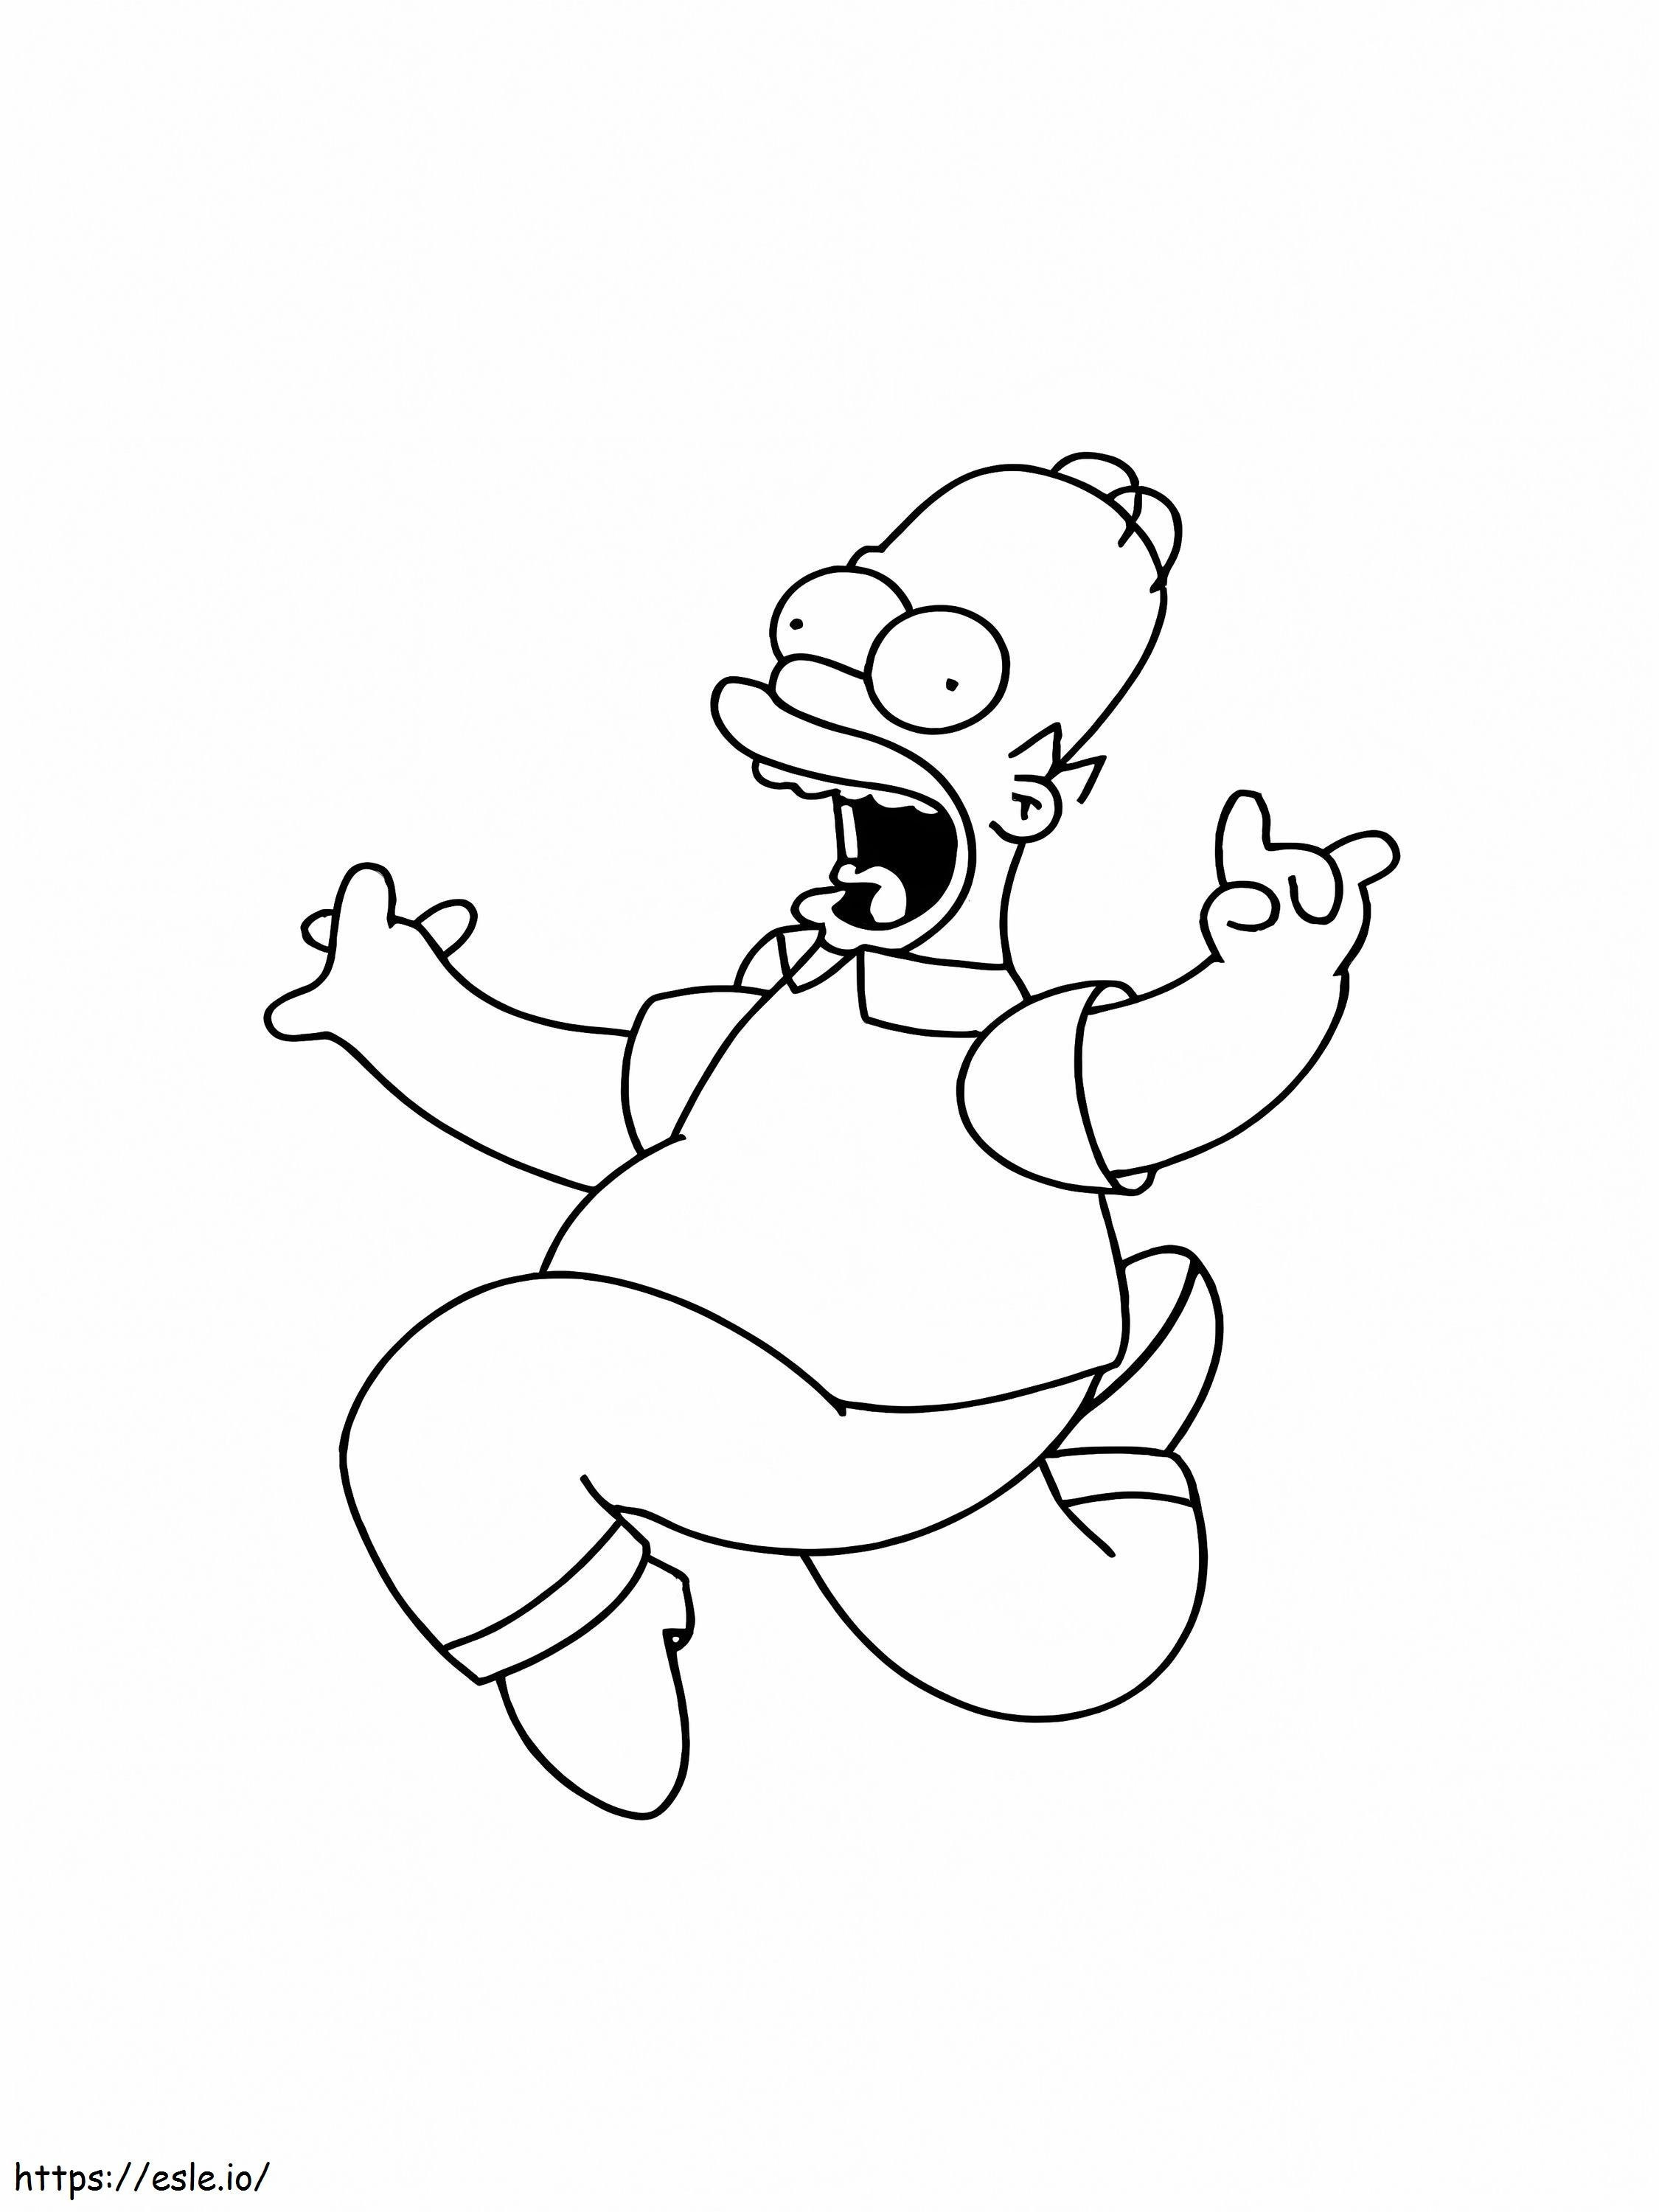 Homer Simpson Lompat Gambar Mewarnai